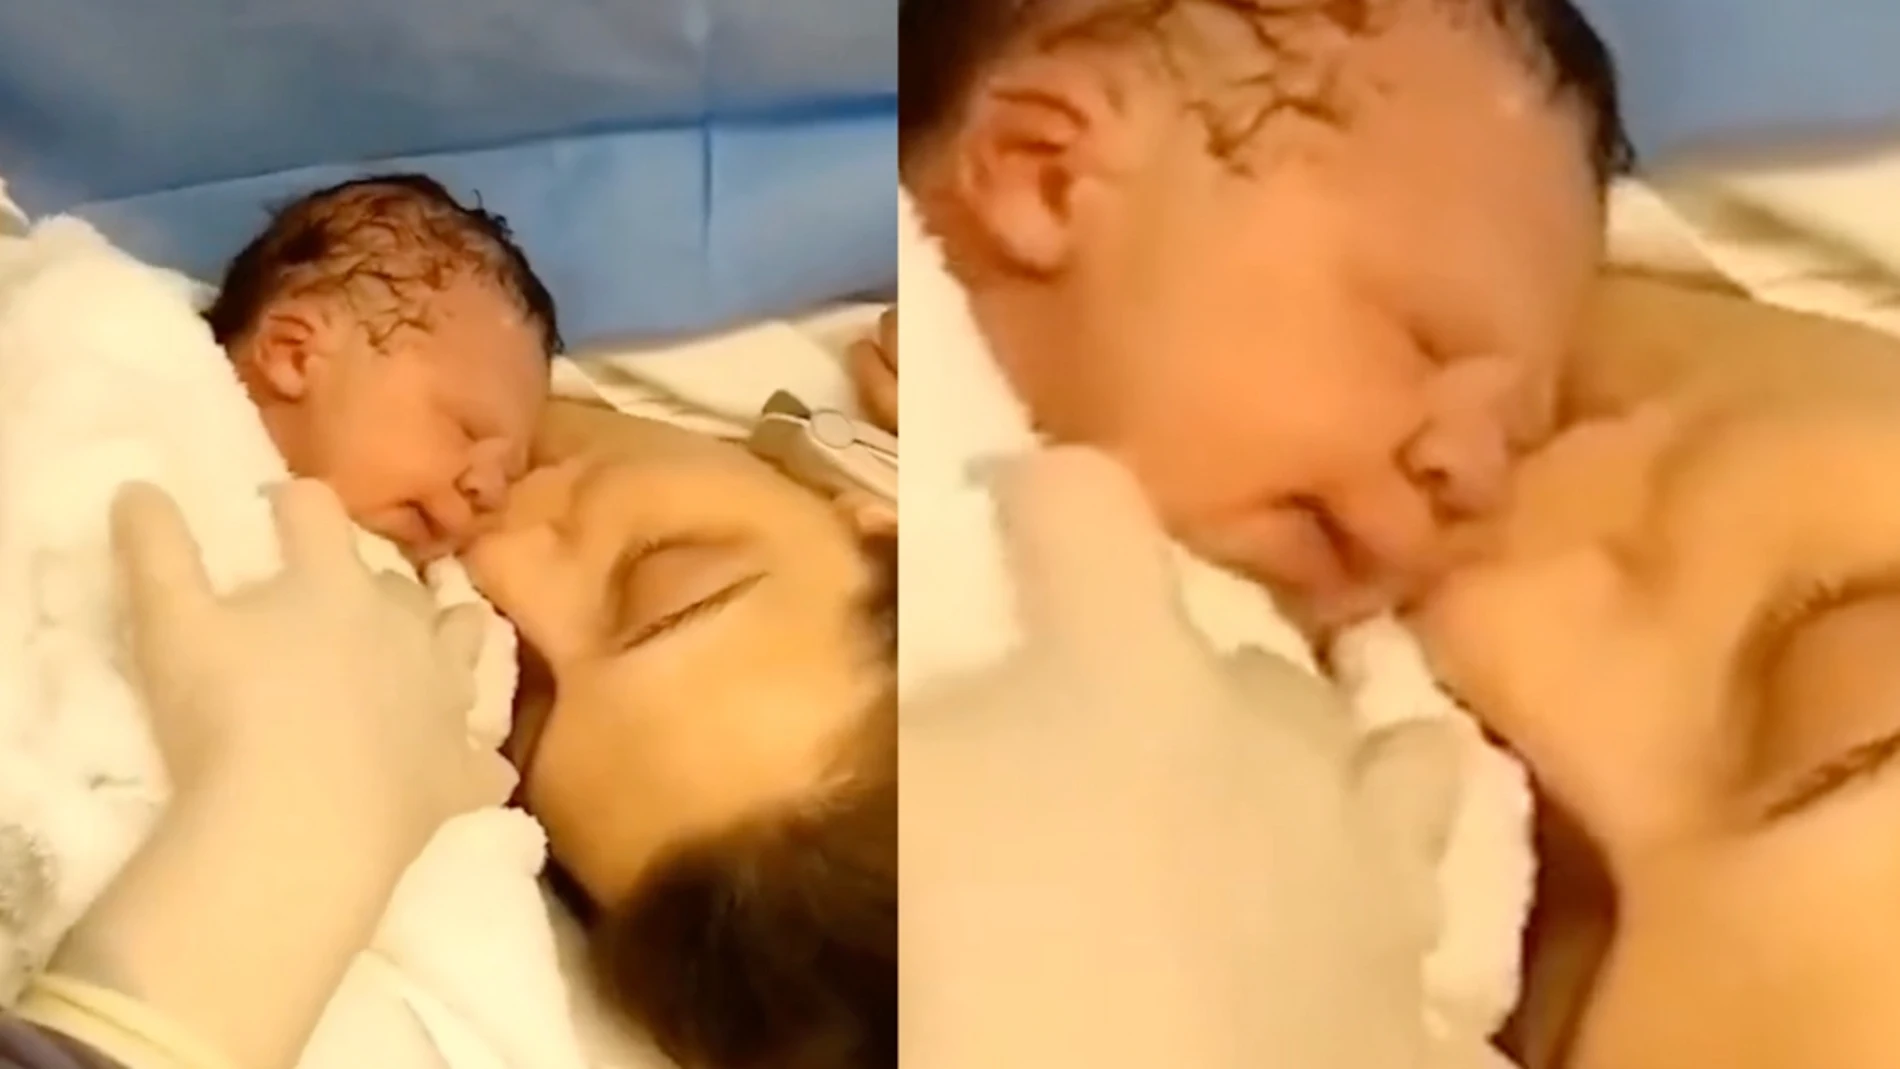 El primer beso de una madre a su hijo recién nacido